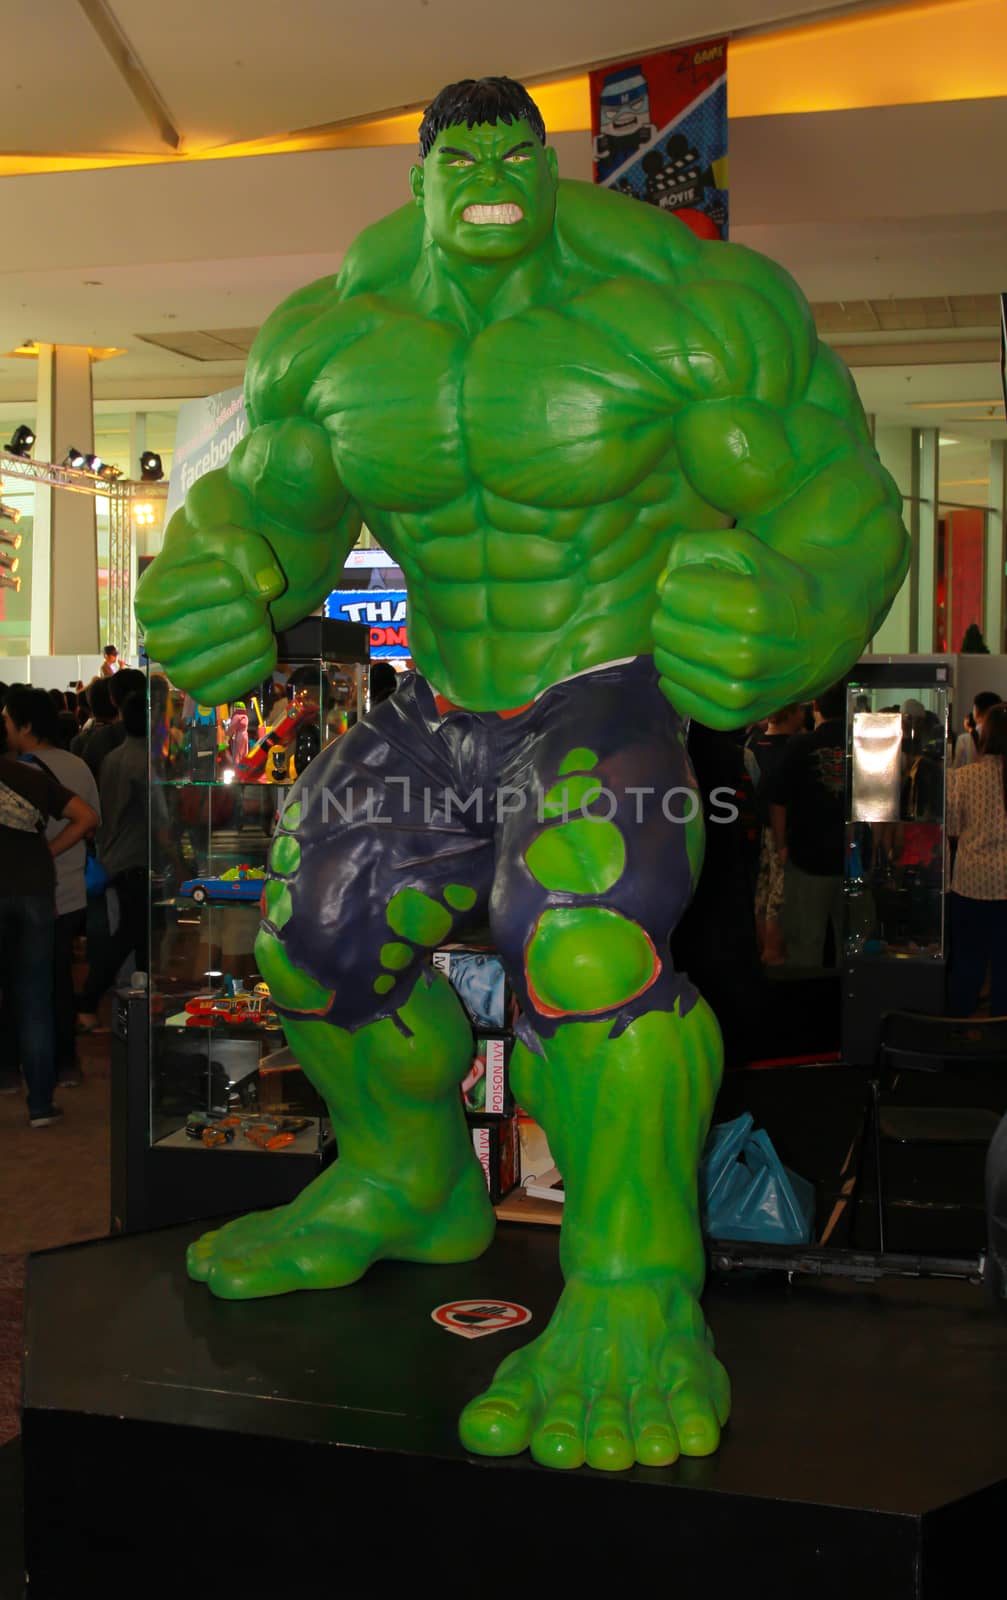 BANGKOK - MAY. 11: A Hulk model in Thailand Comic Con 2014 on May 11, 2014 at Siam Paragon, Bangkok, Thailand.